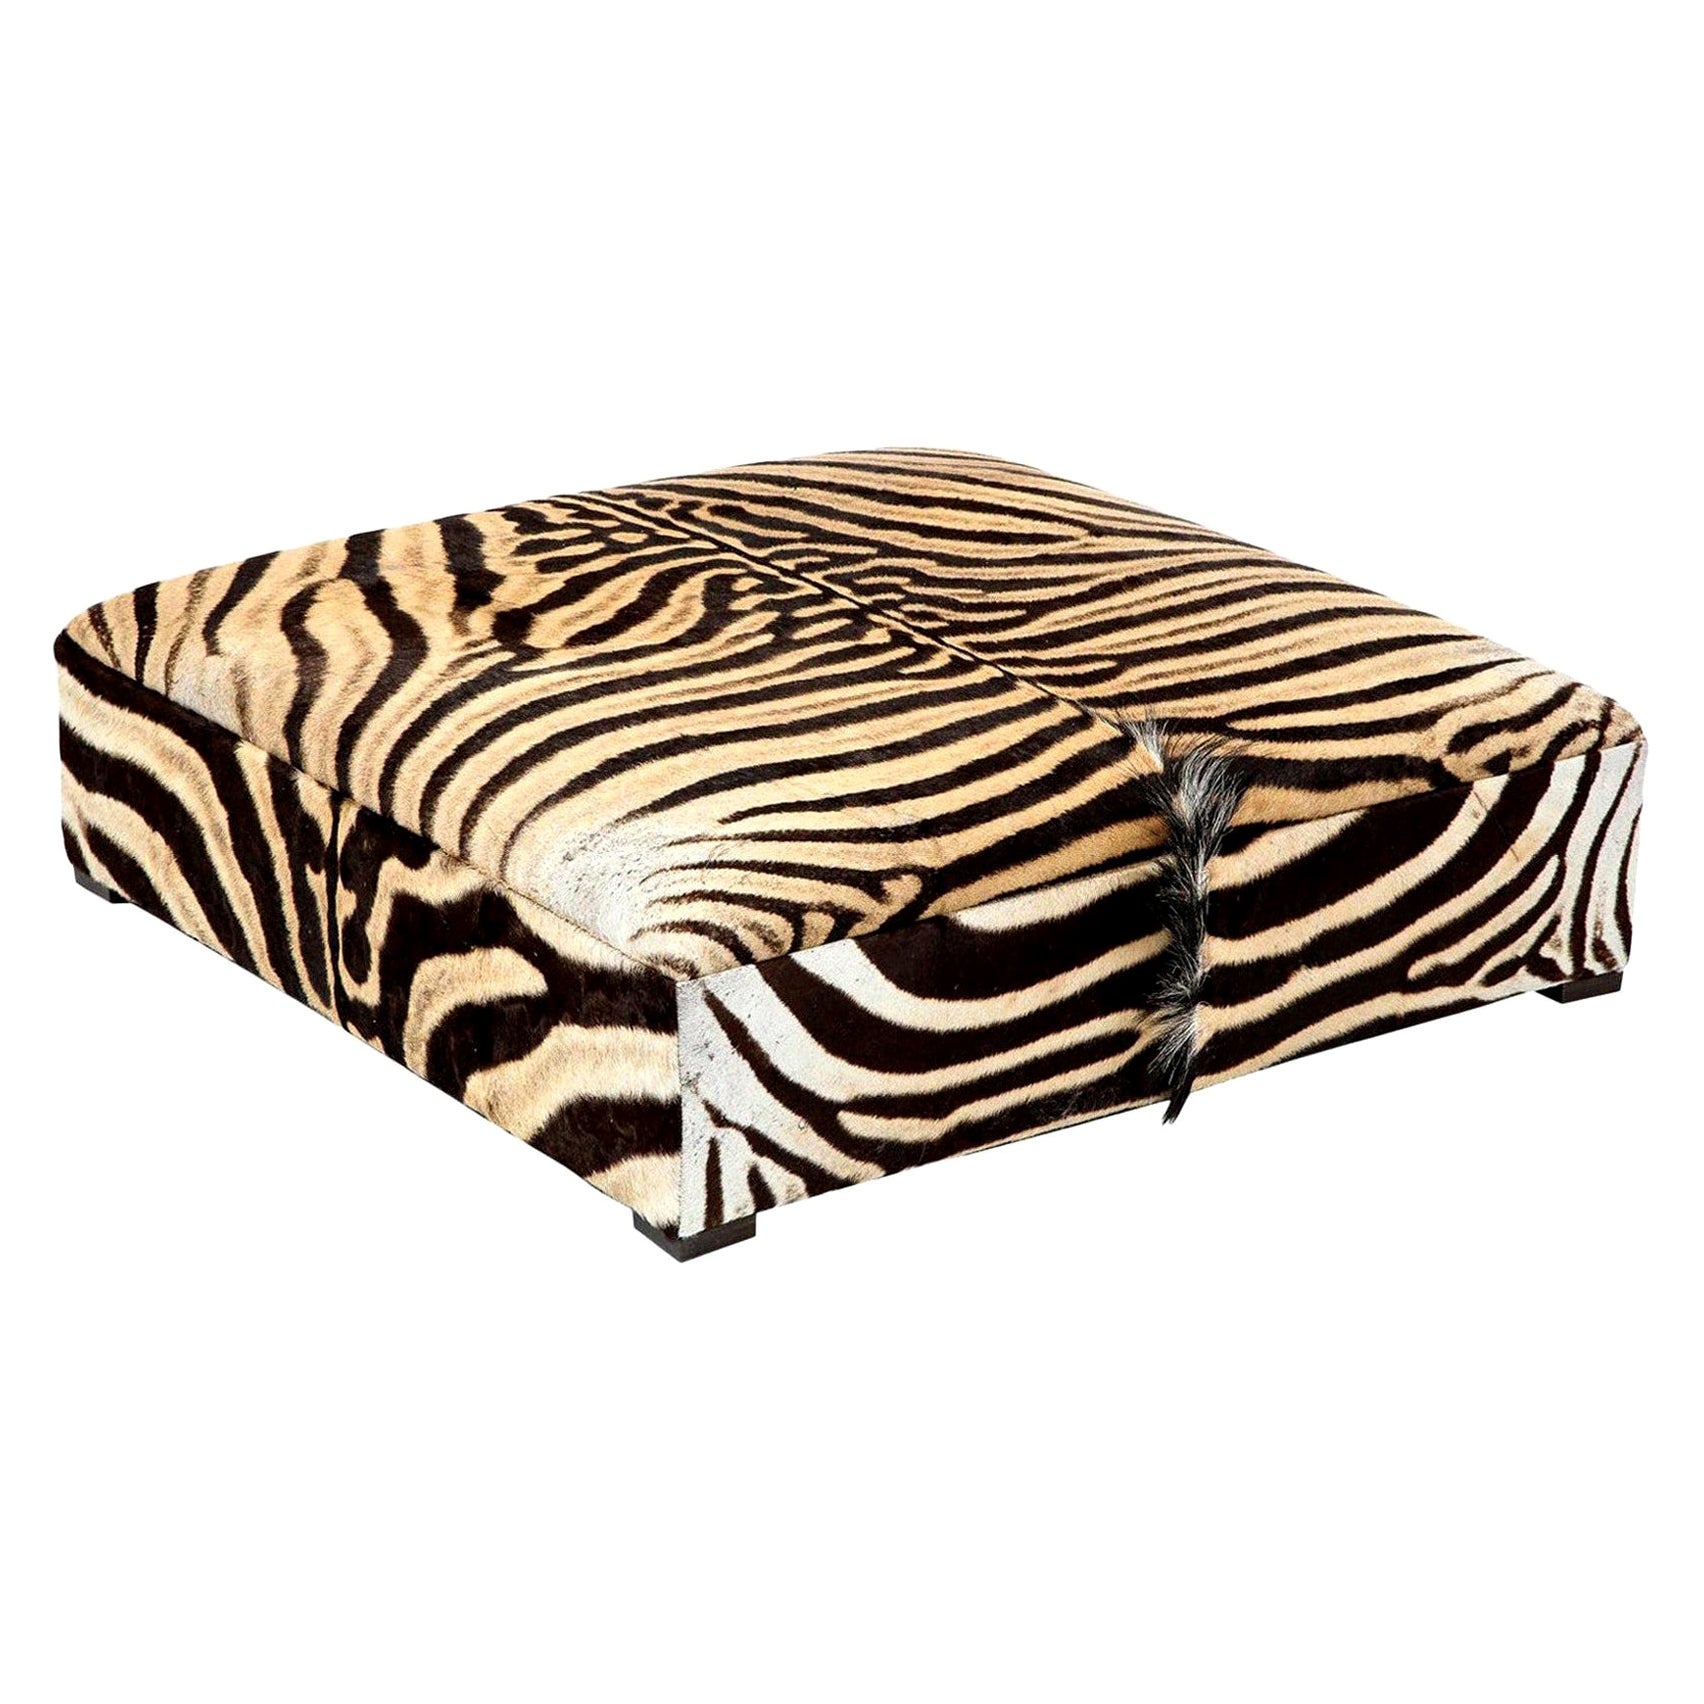 Ottomane/table basse carrée Zebra, deux peaux Zebra, fabriquée sur mesure aux États-Unis